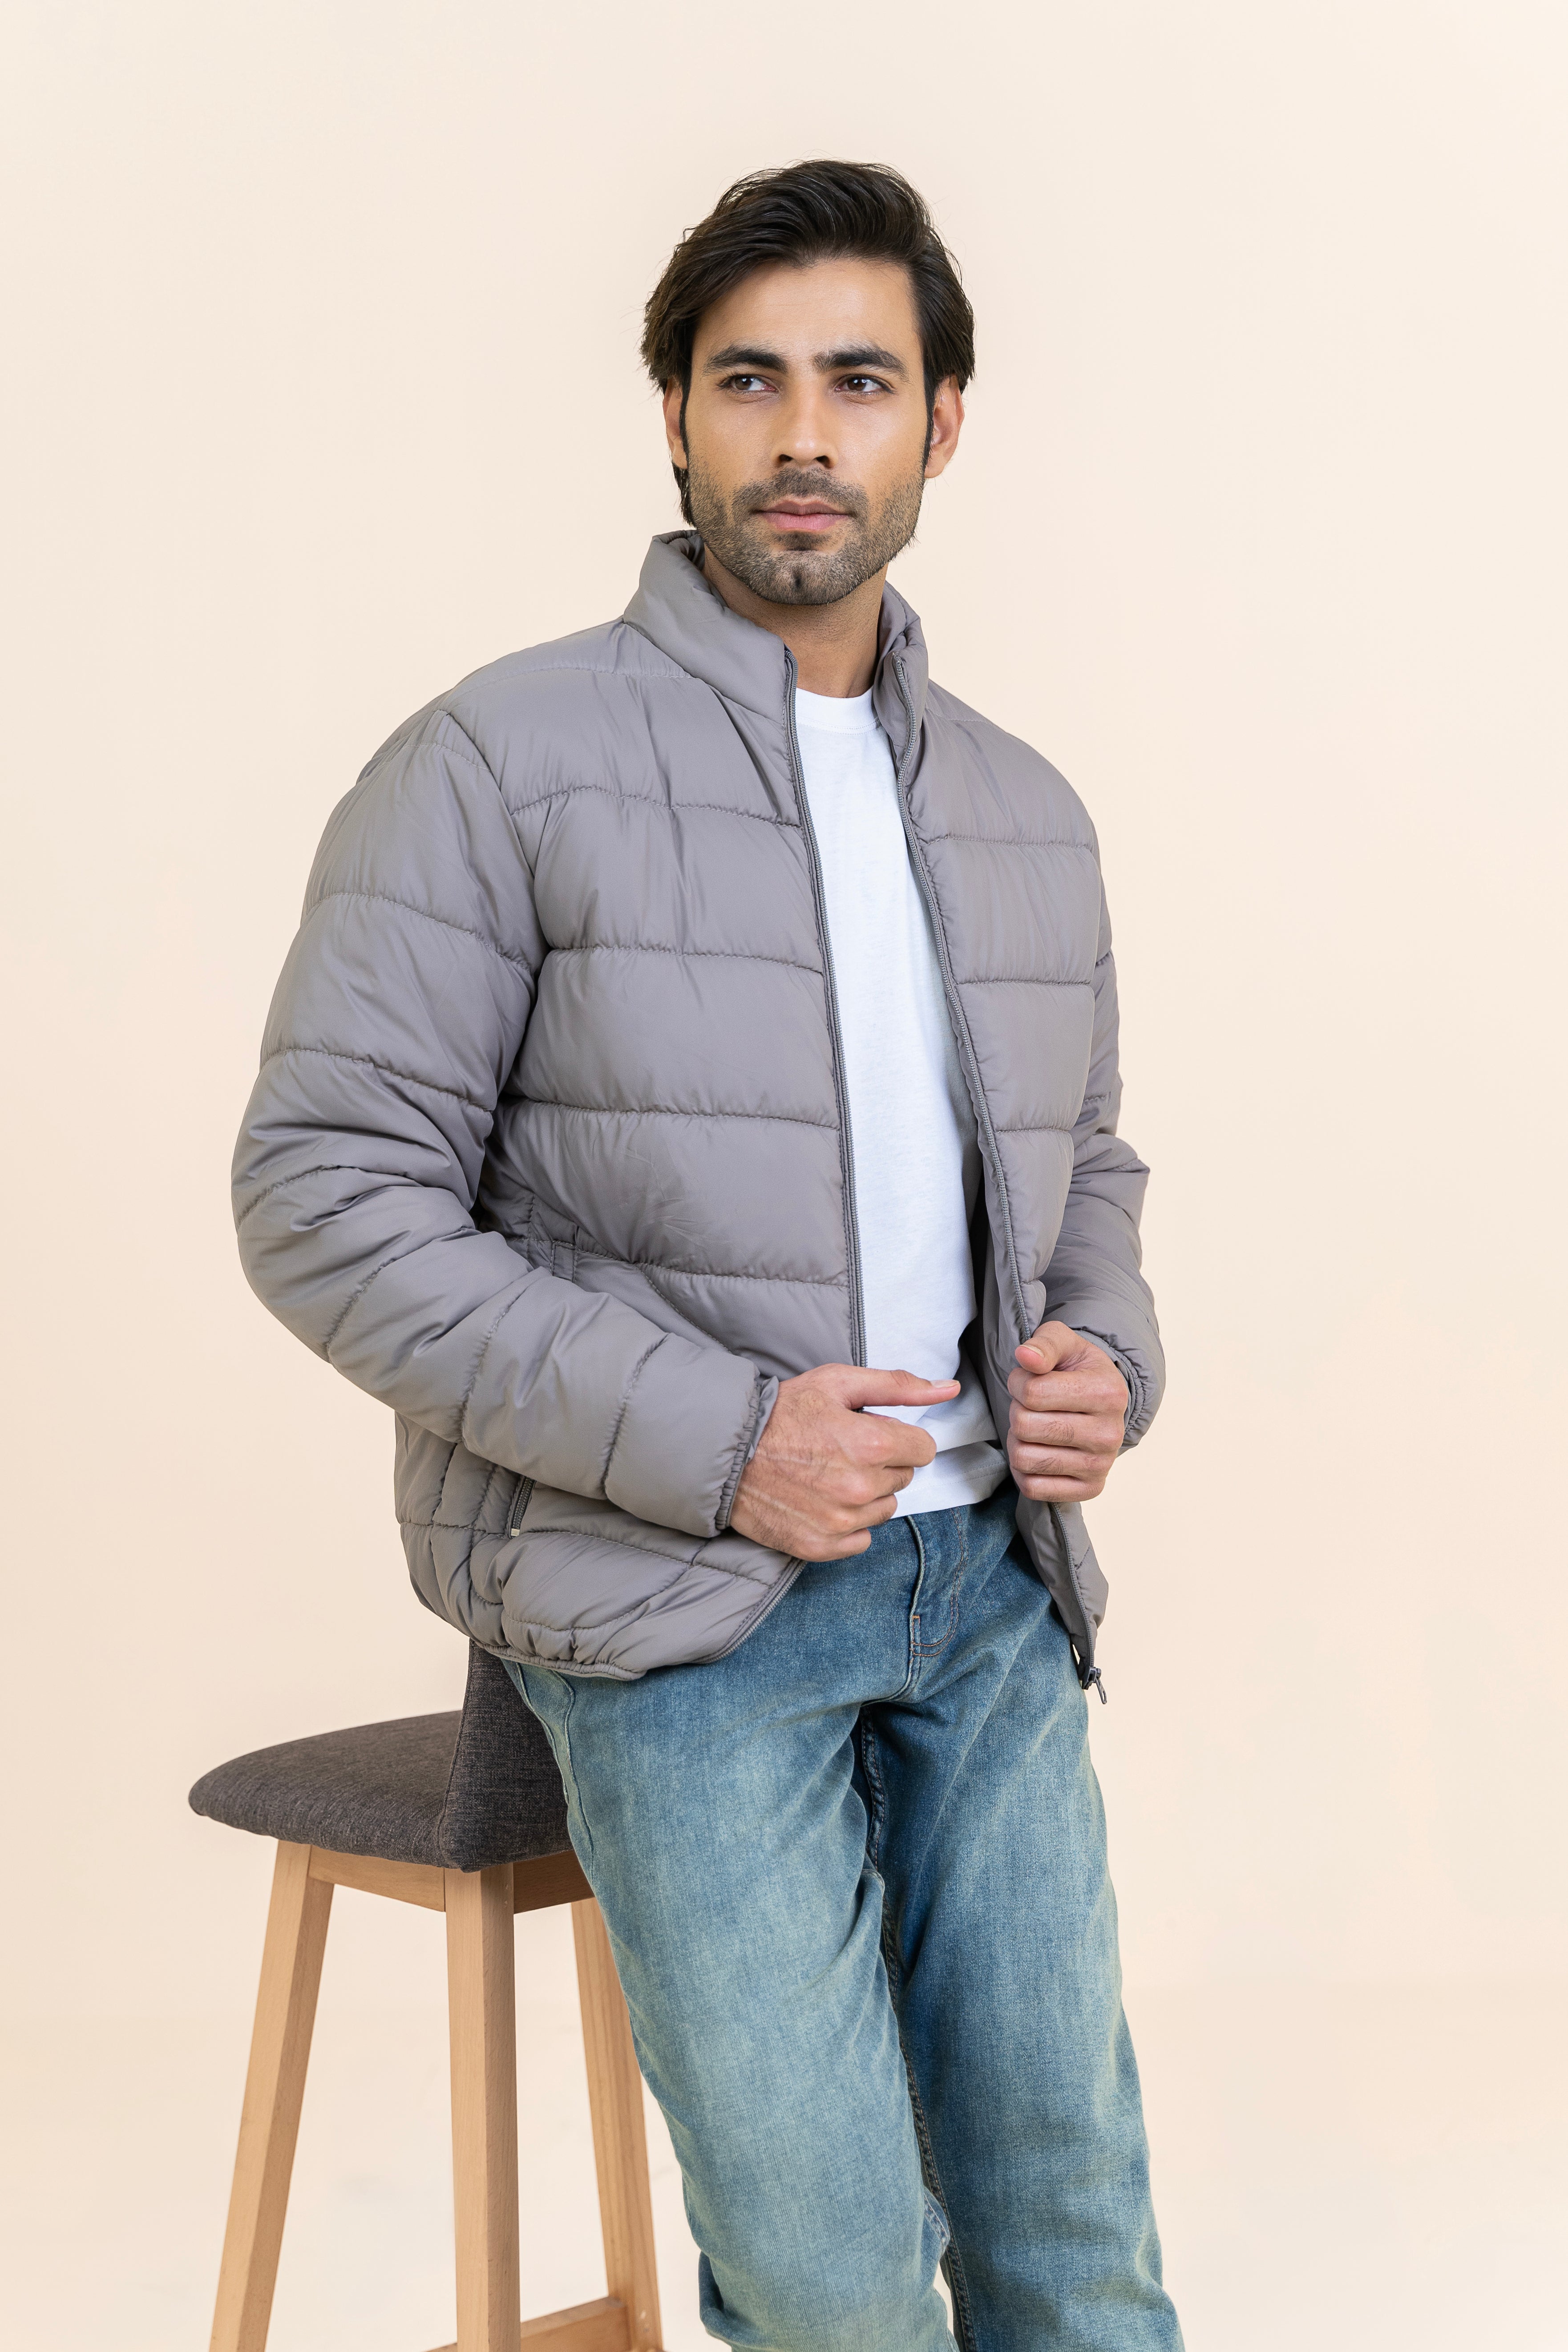 Shop Grey Puffer Jacket For Men